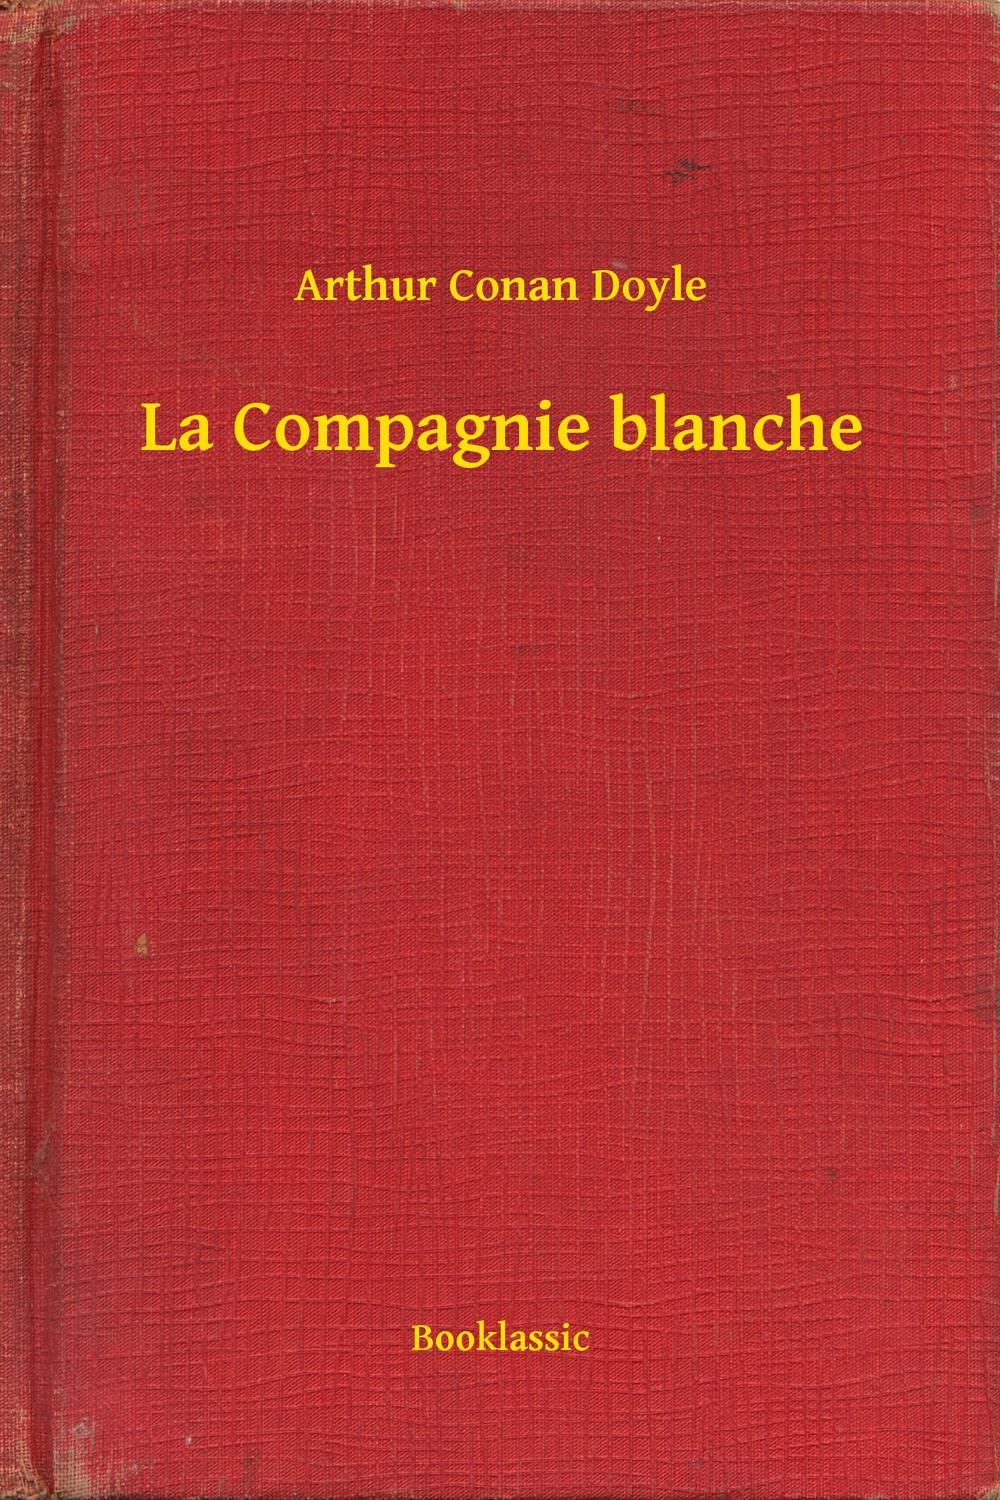 La Compagnie blanche - Arthur Conan Doyle,,